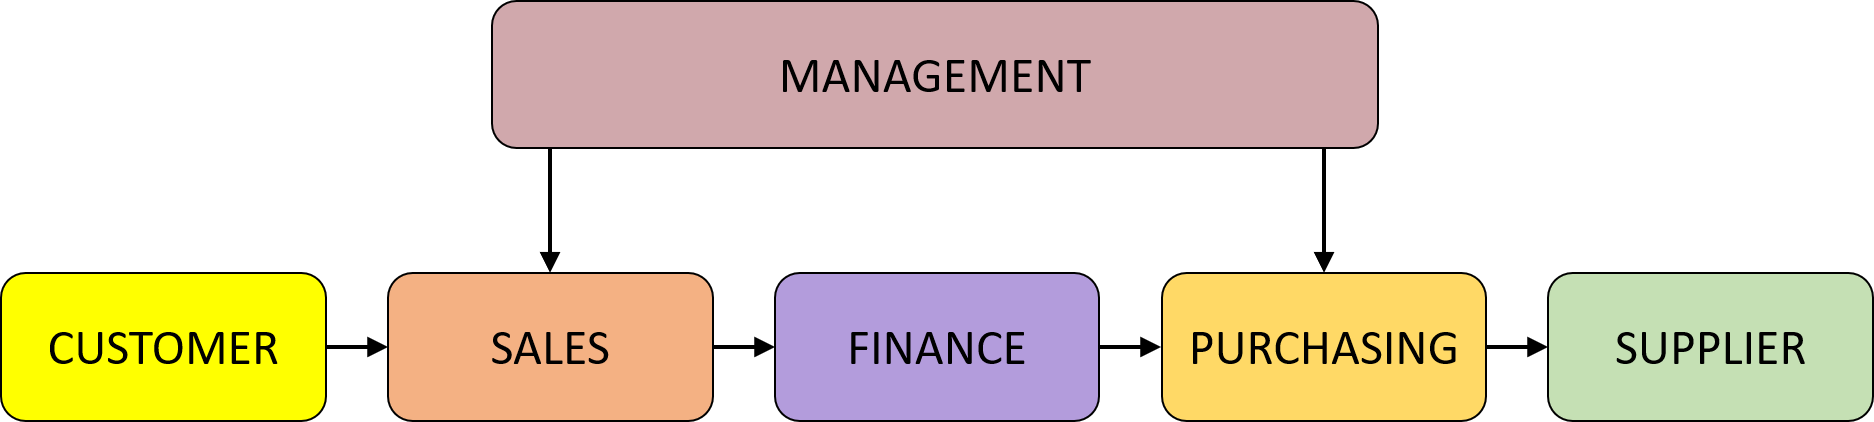 cash management process